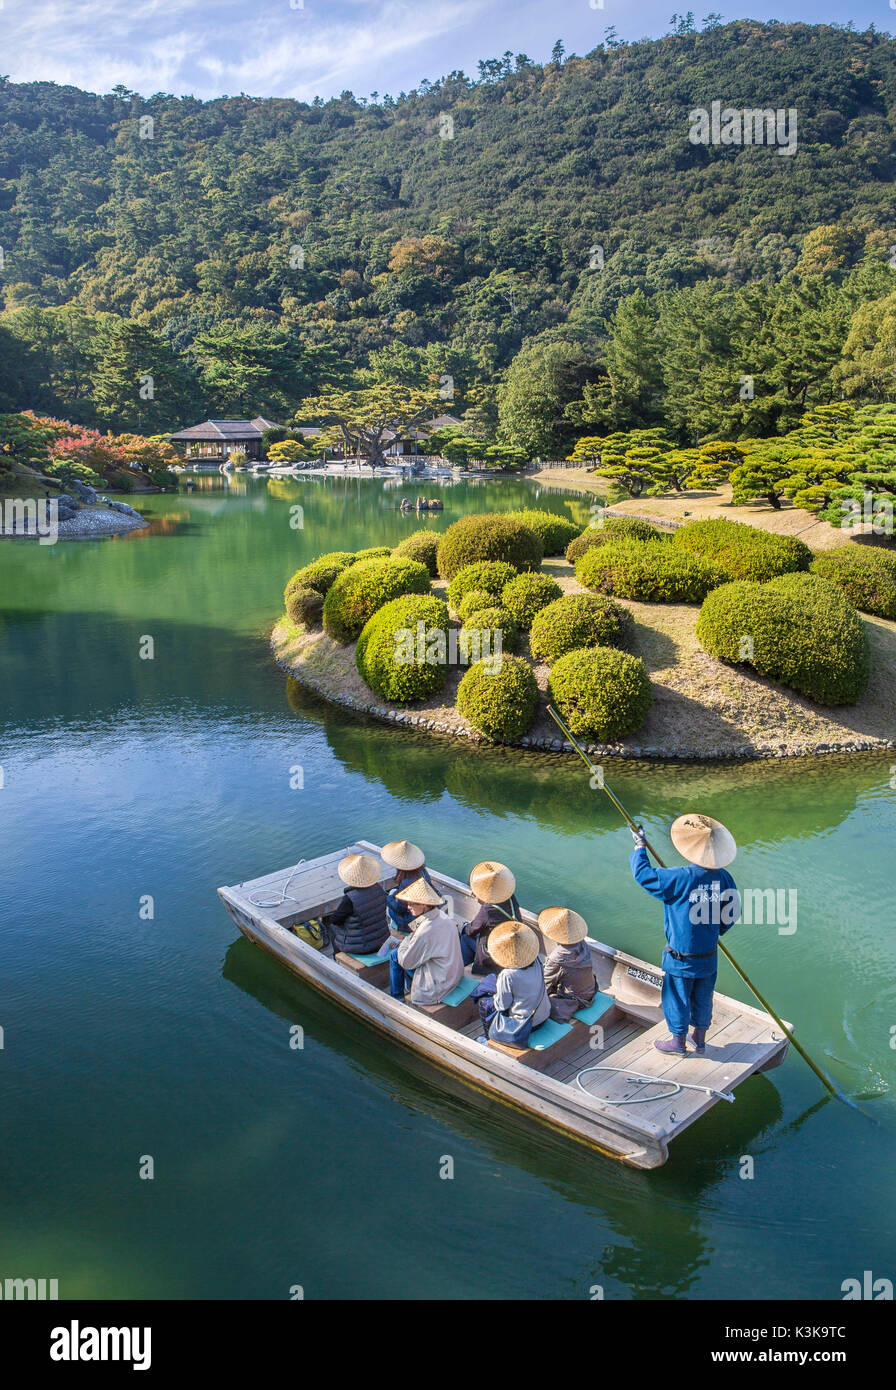 Le Japon, l'île de Shikoku, Takamatsu Ritsurin Koen, ville jardin, bateau, transport, tourisme Banque D'Images